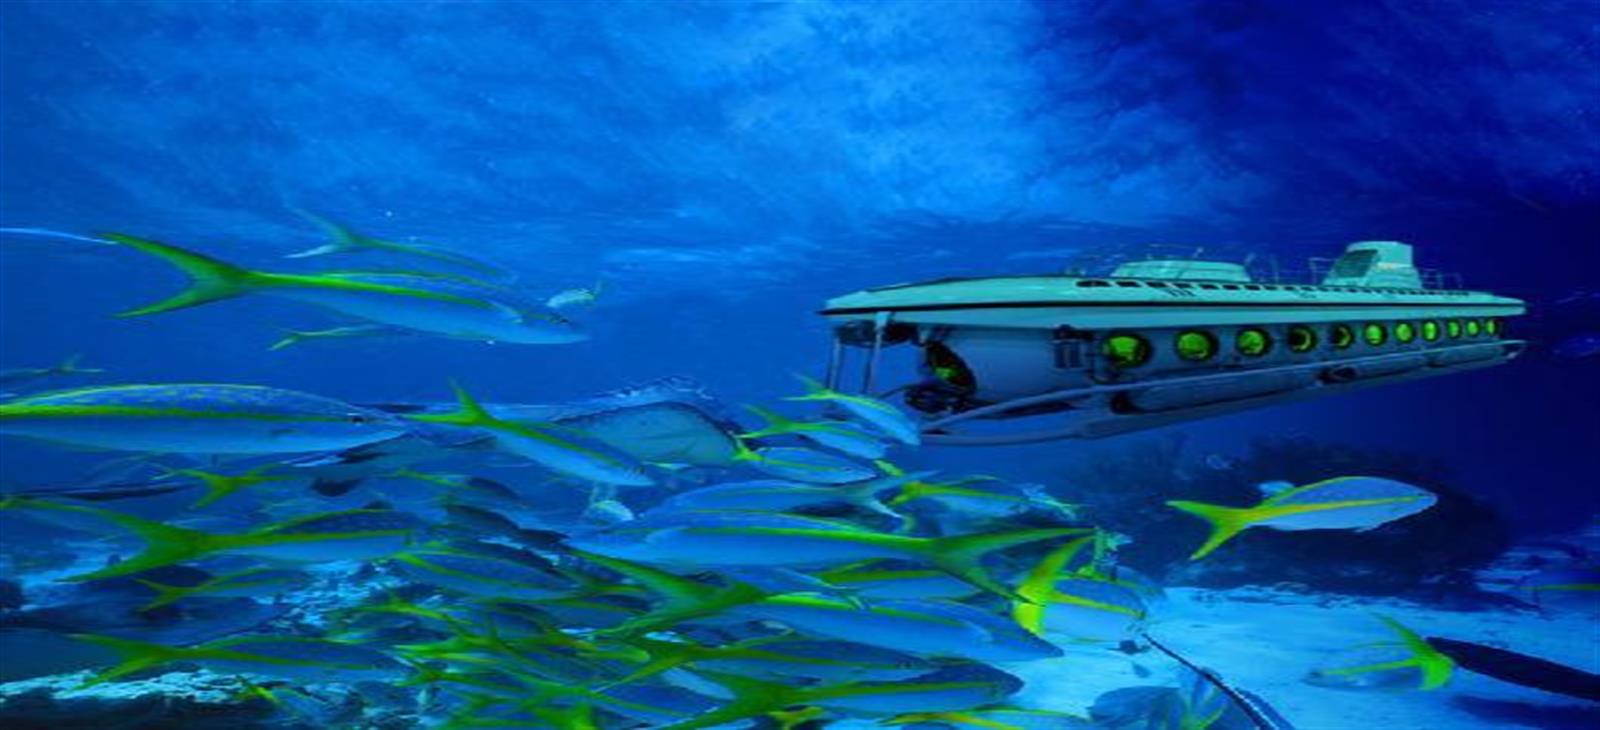 Hurghada submarino